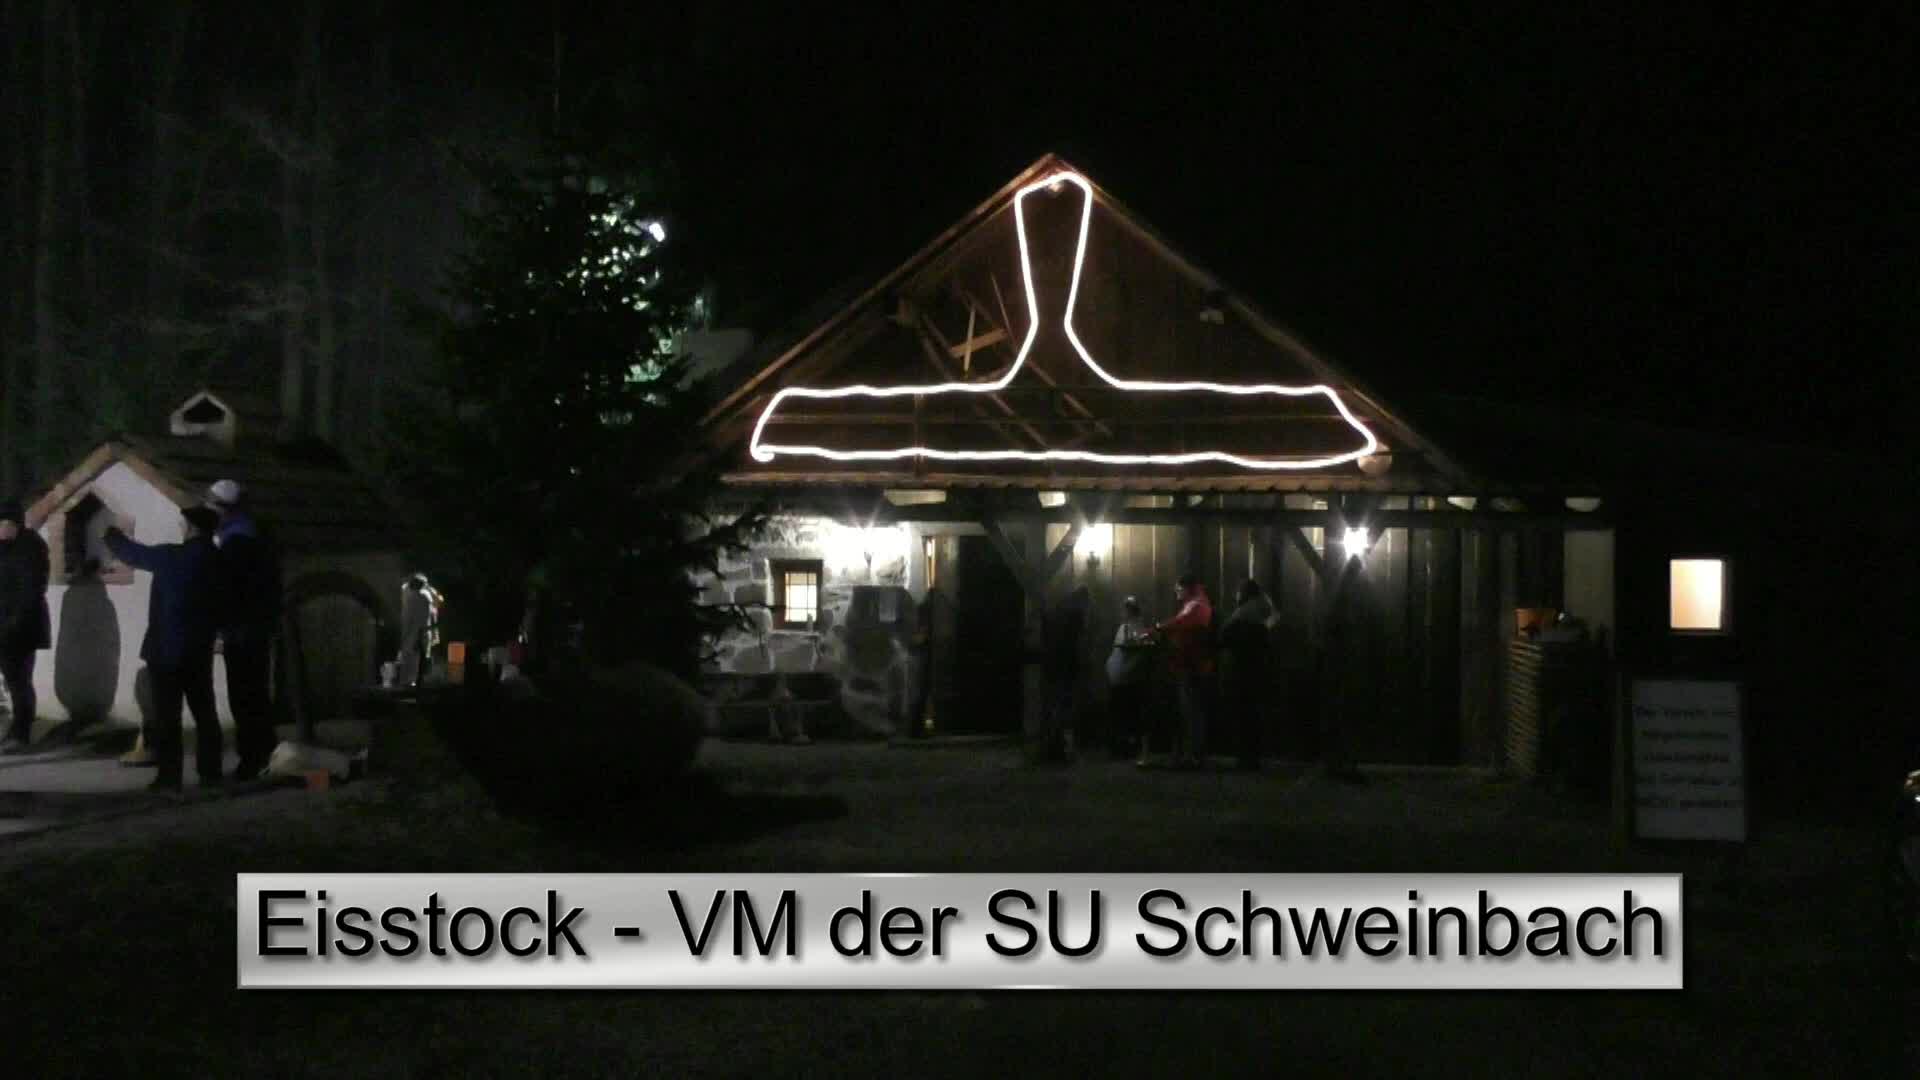 Eisstock-VM der SU Schweinbach